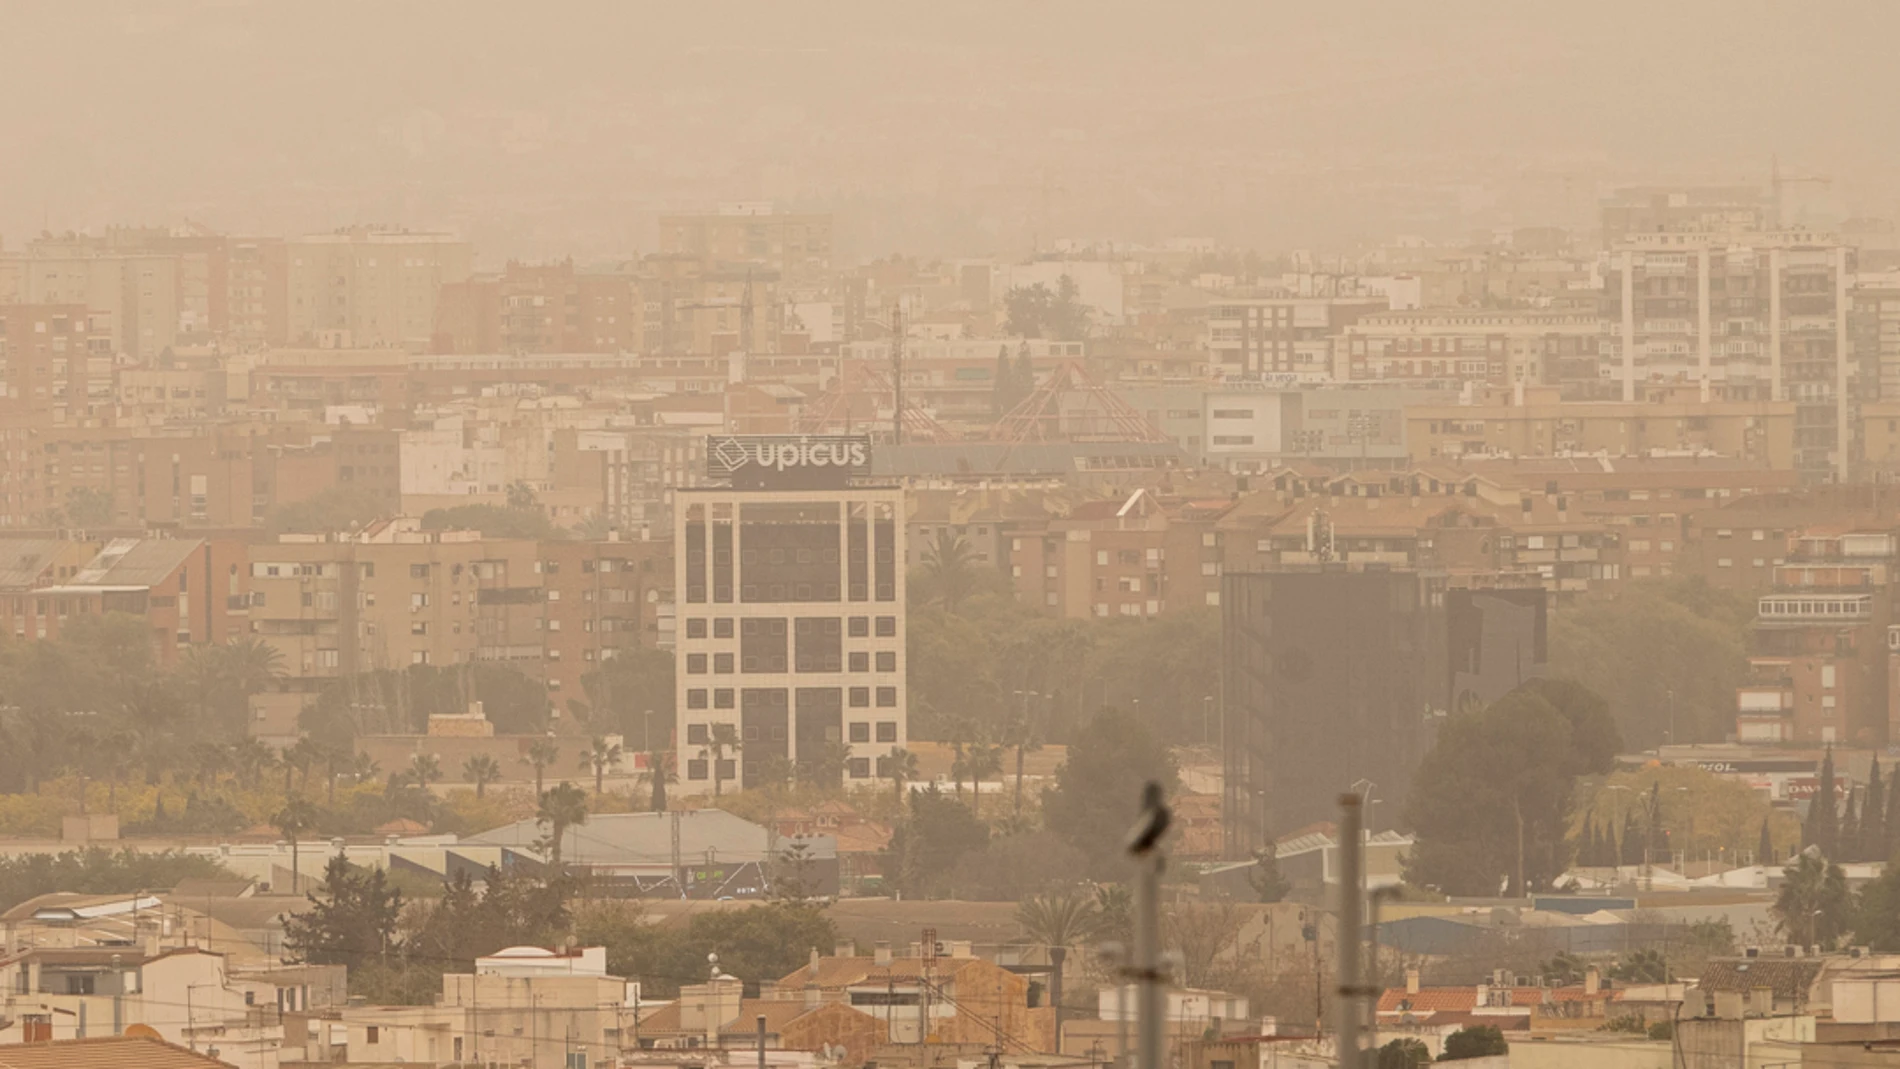 Vista de la ciudad de Murcia cubierta con una neblina de color rojo por el alto número de partículas y polvo en suspensión este martes